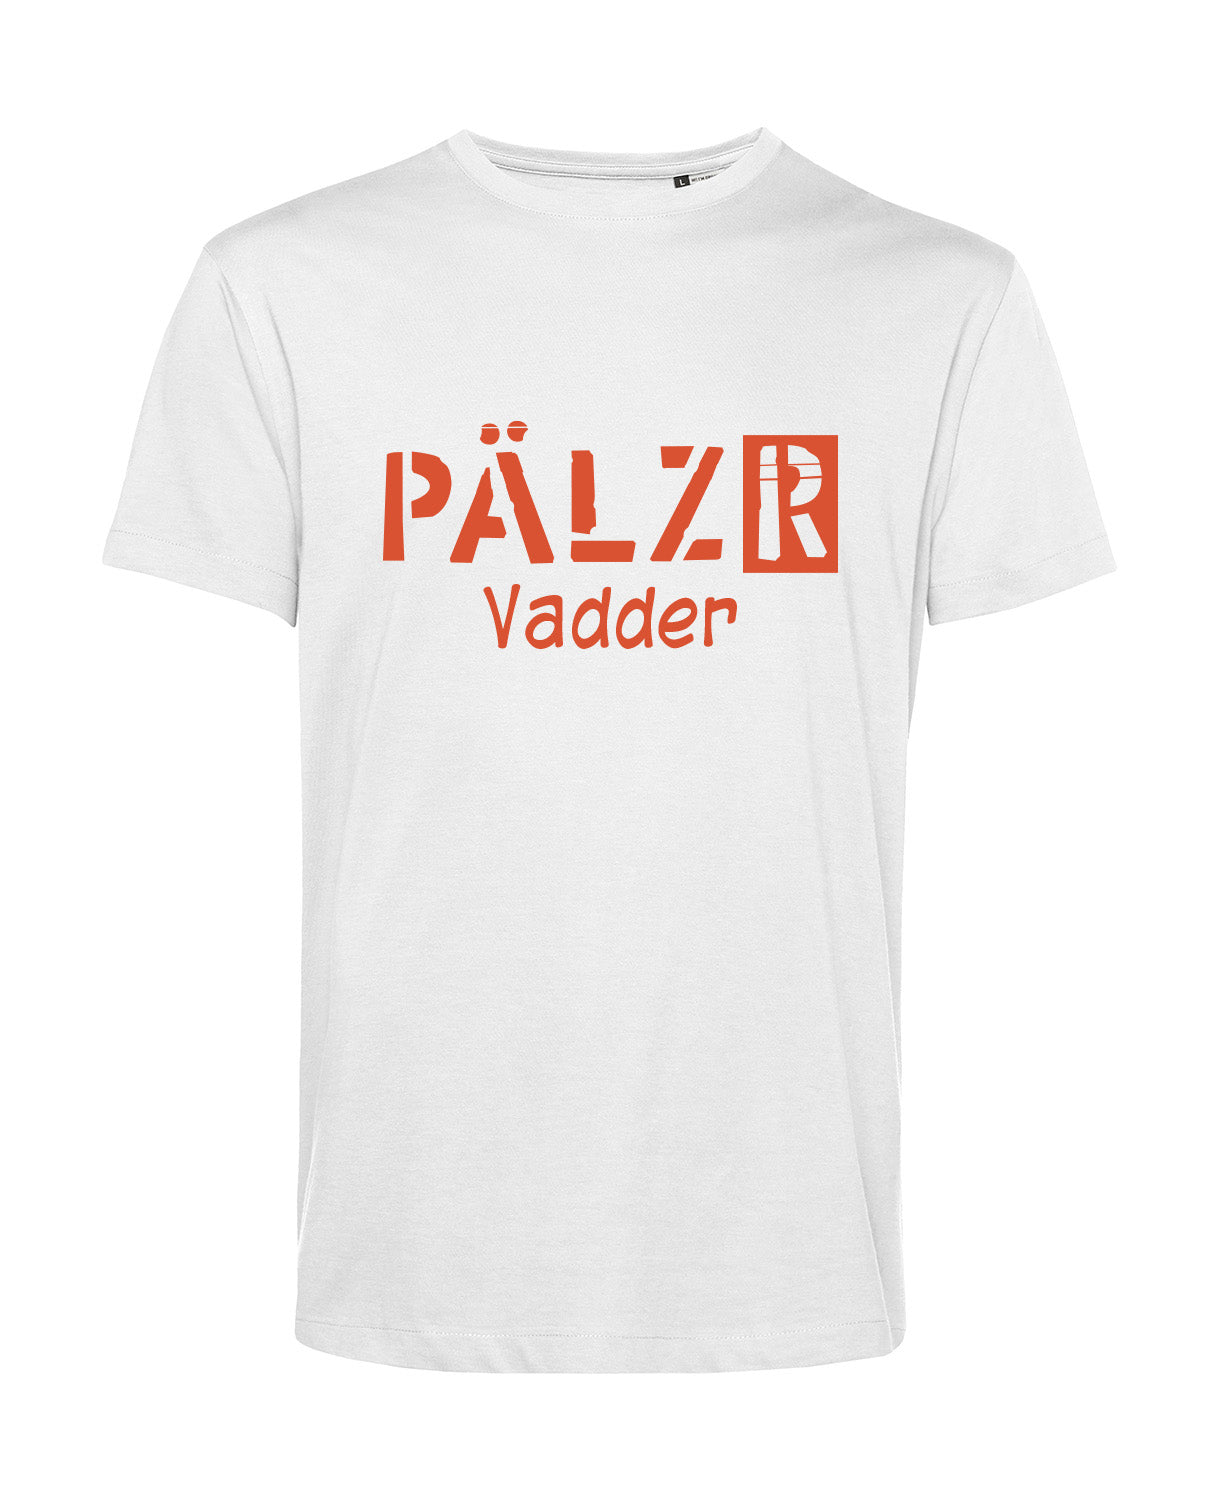 Männer T-Shirt | PÄLZR Vadder | weiss | Logo orange